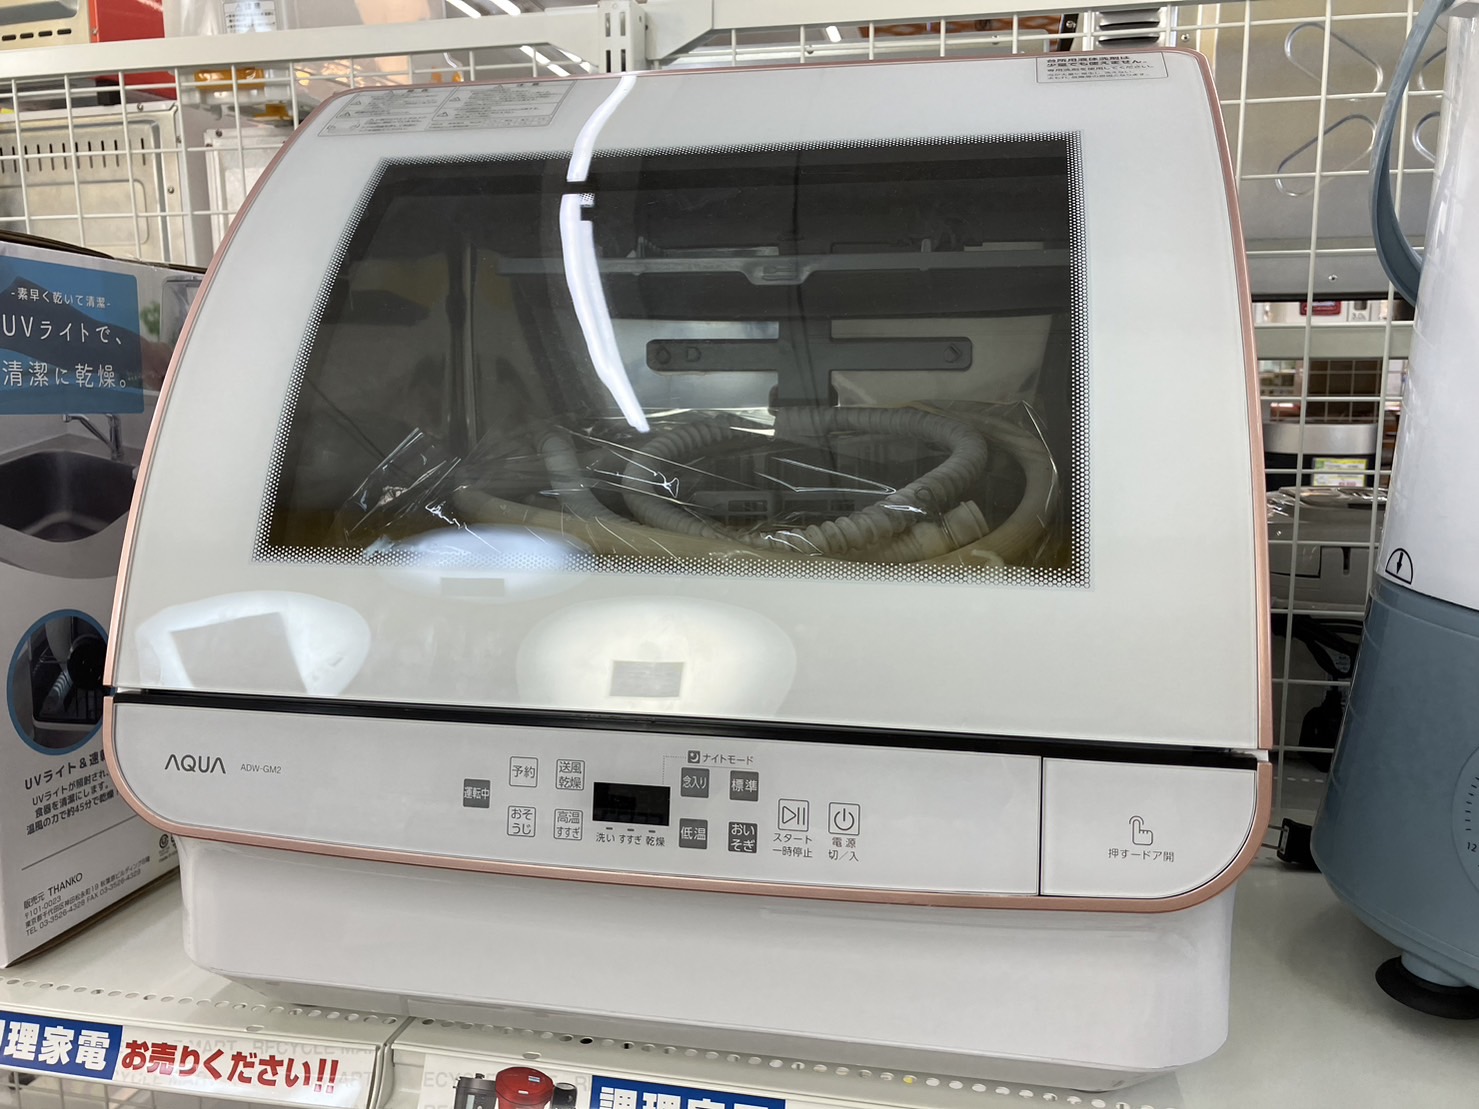 【AQUA アクア 食器洗い乾燥機 ADW-GM2 2020年式】を買取いたしました！ - リサイクルマートは現在冷蔵庫の買取、家具の買取強化中です！お気軽にお問い合わせください。